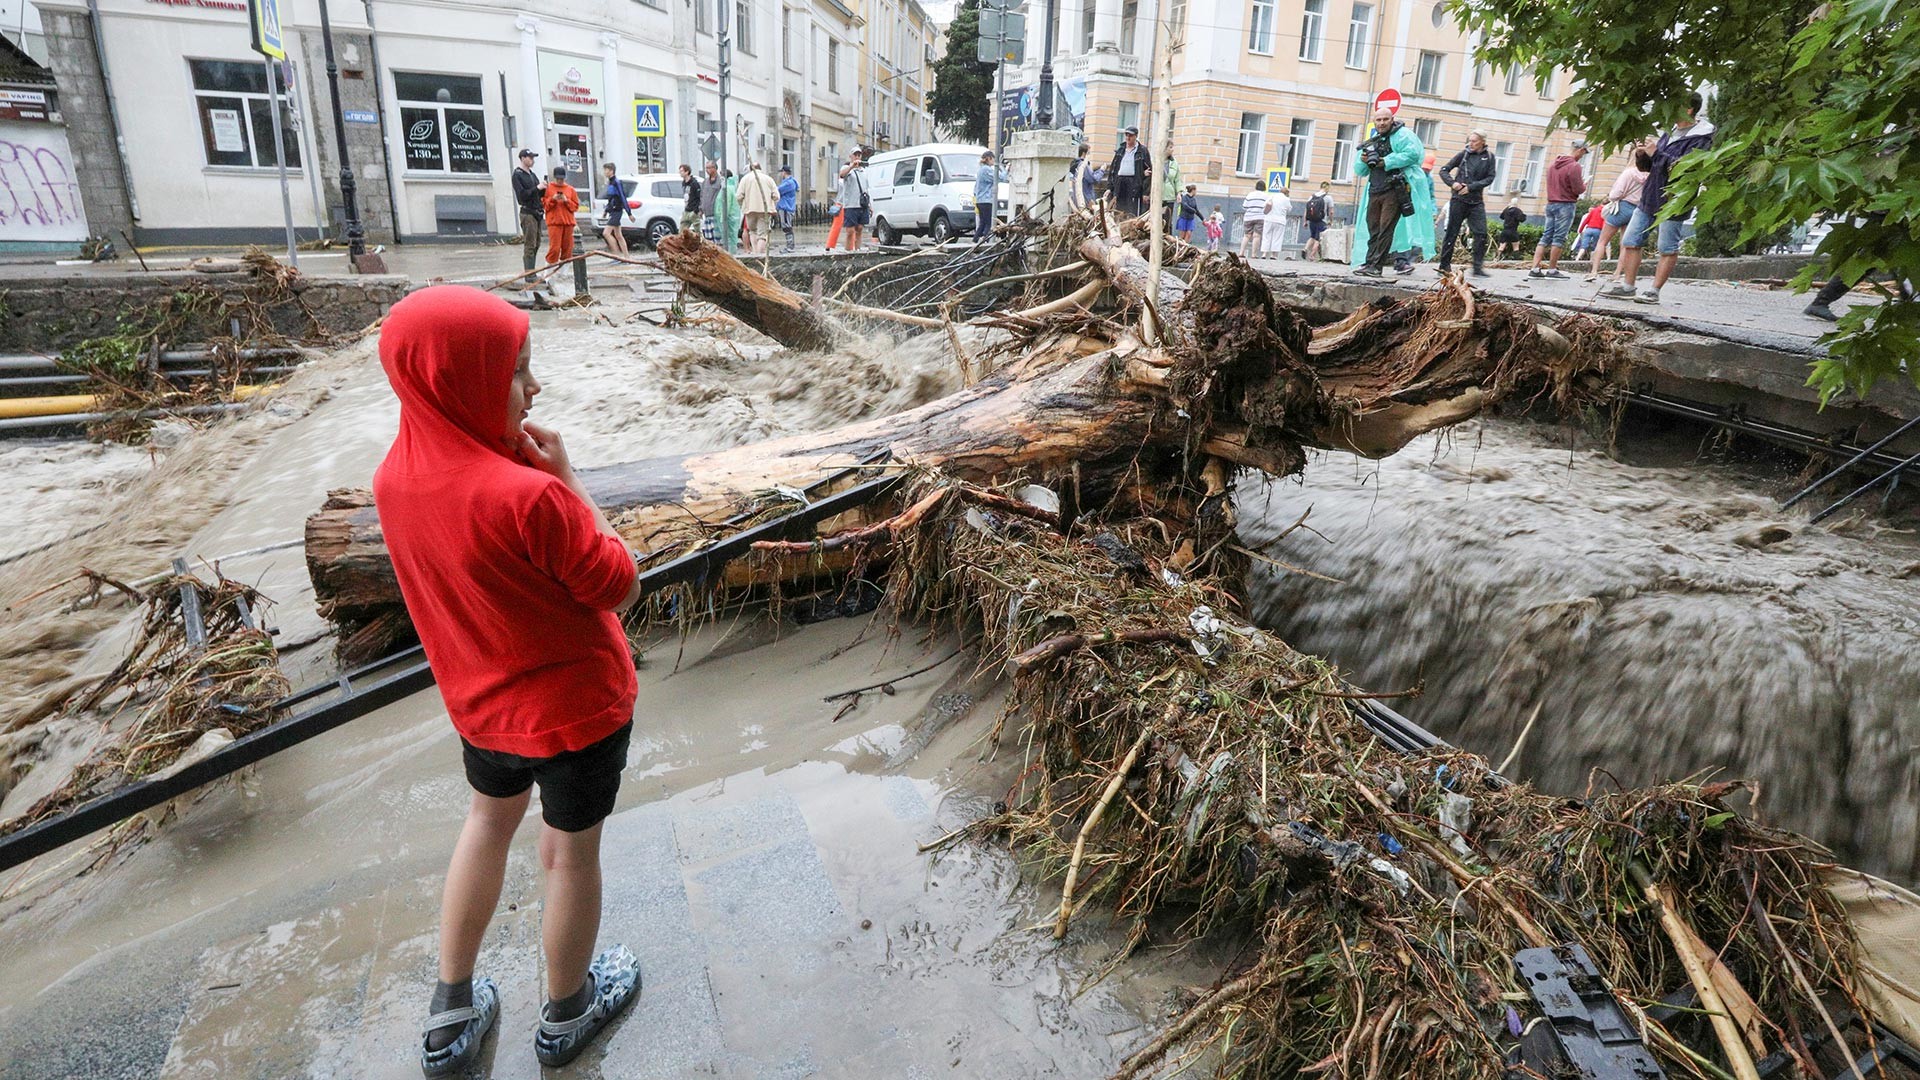 Људи на улици после поплаве након обилних падавина на Јалти.